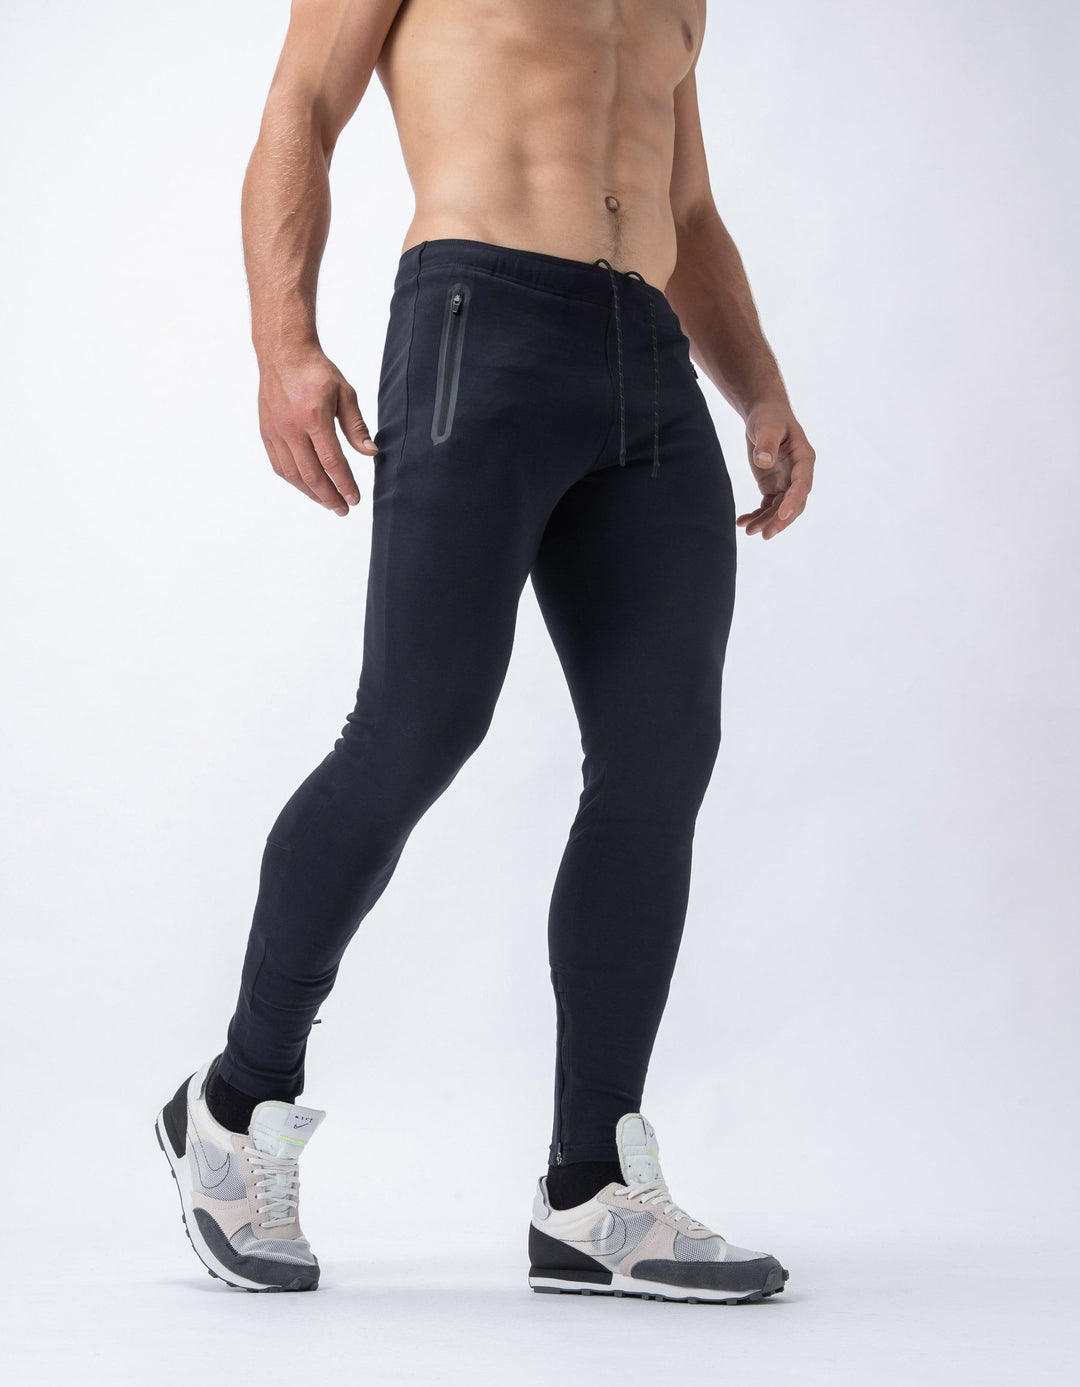 REC GEN - Men's Biform Zip Pant - Black